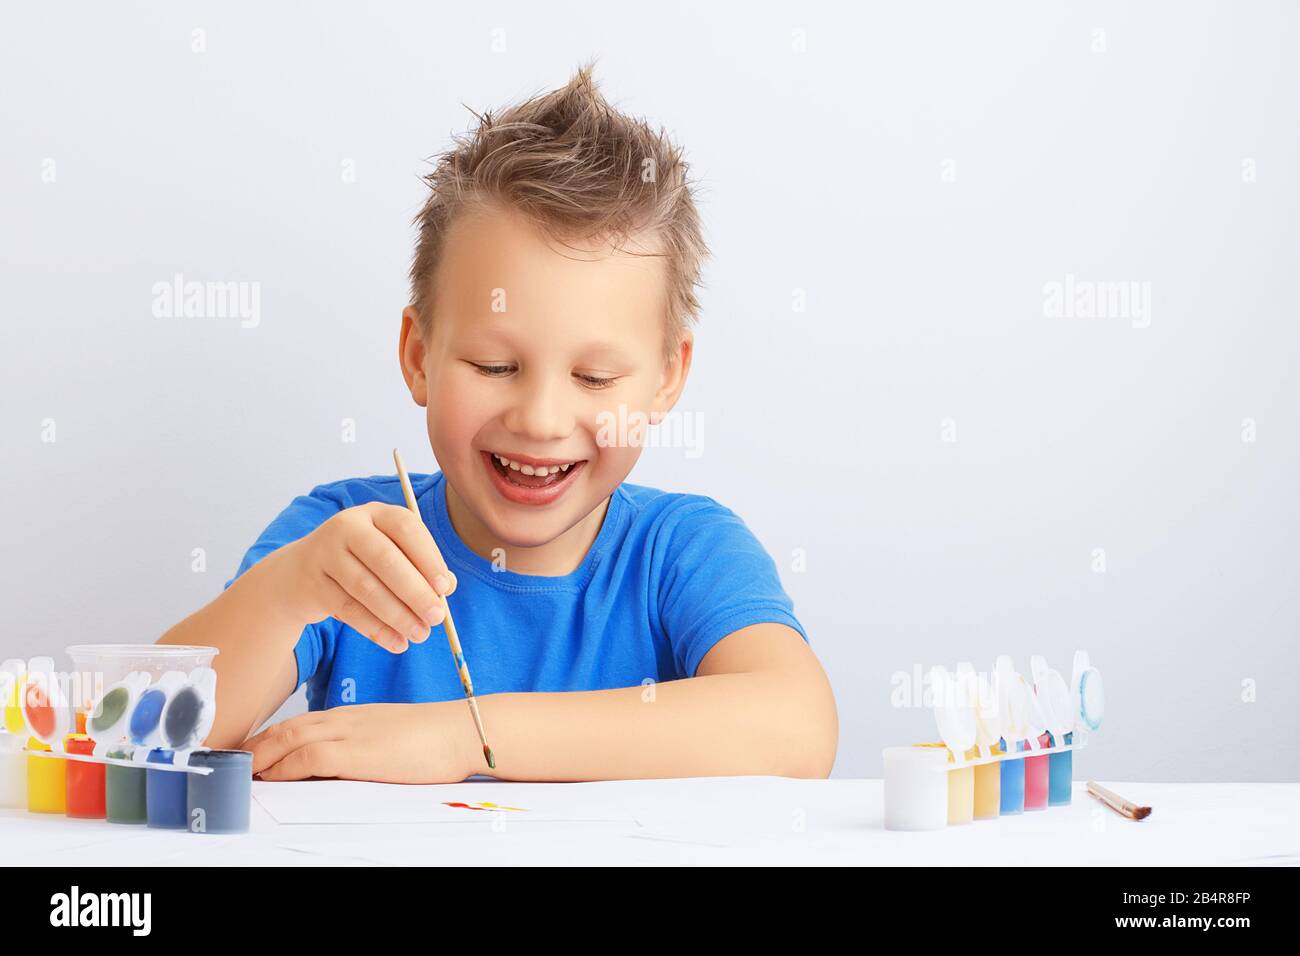 Ein fröhlicher lachender kleiner Junge mit unordentlichen Haaren hält einen Malpinsel in der Hand und malt mit bunten Farben auf einem weißen Blatt Papier. Schuleduc Stockfoto